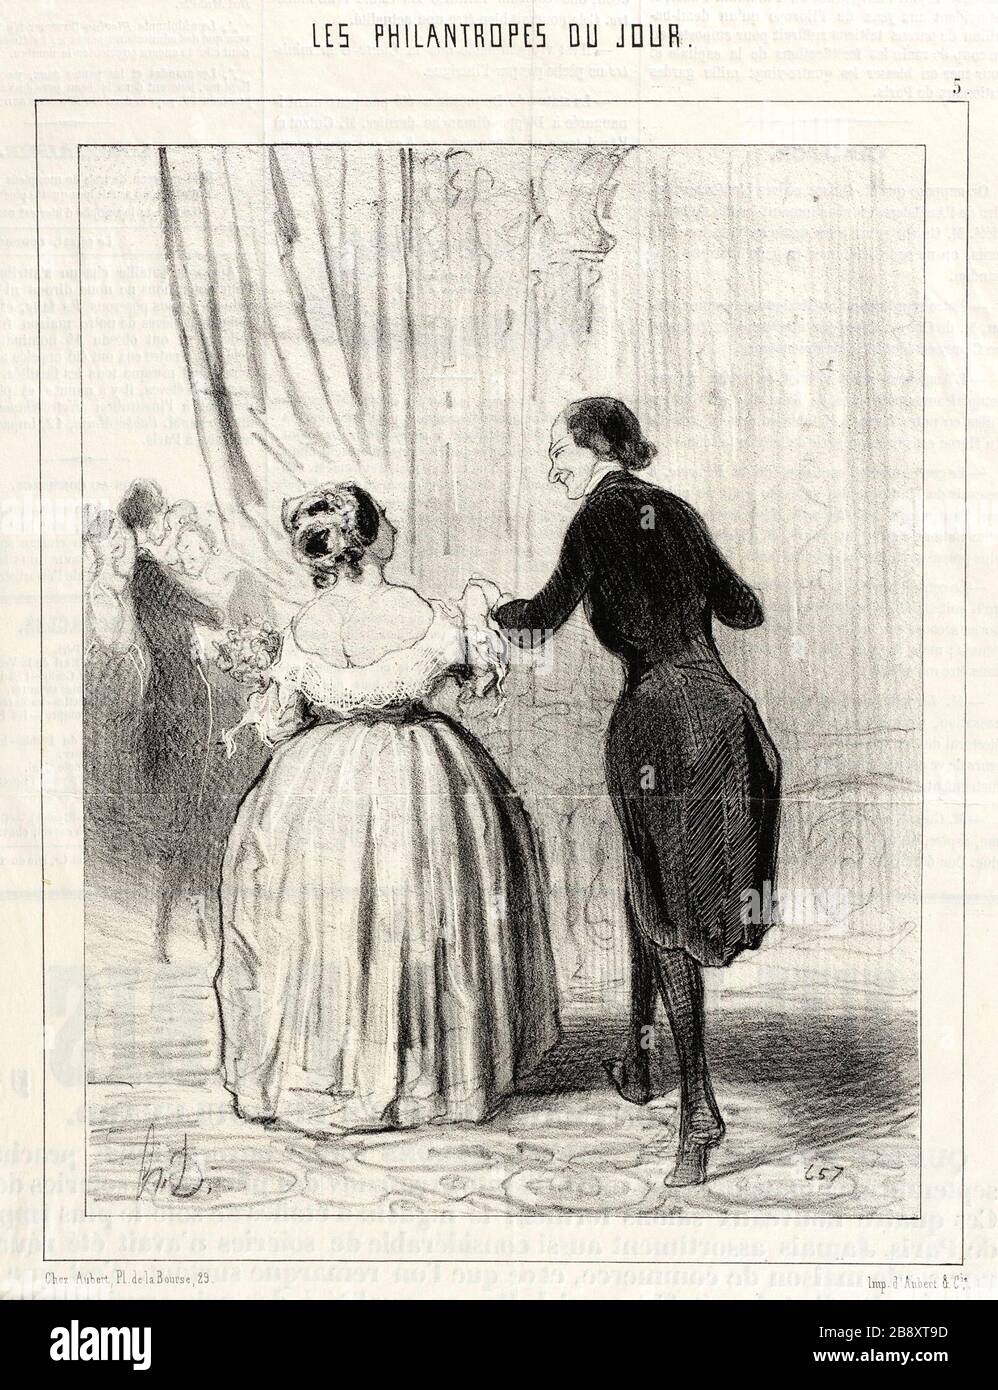 'Madame... ce n'est pas assez que d'avoir dansé au benéfice de ces pauvres Polonais...; English:  France, 1844 Series: Les Philantropes du jour, plate 5 Periodical: Le Charivari, 27 September 1844 Prints; lithographs Lithograph Sheet: 8 5/8 x 6 13/16 in. (21.91 x 17.3 cm) Gift of Norman and Leona Terry (AC1993.2.2) Prints and Drawings; 1844date QS:P571,+1844-00-00T00:00:00Z/9; ' Stock Photo